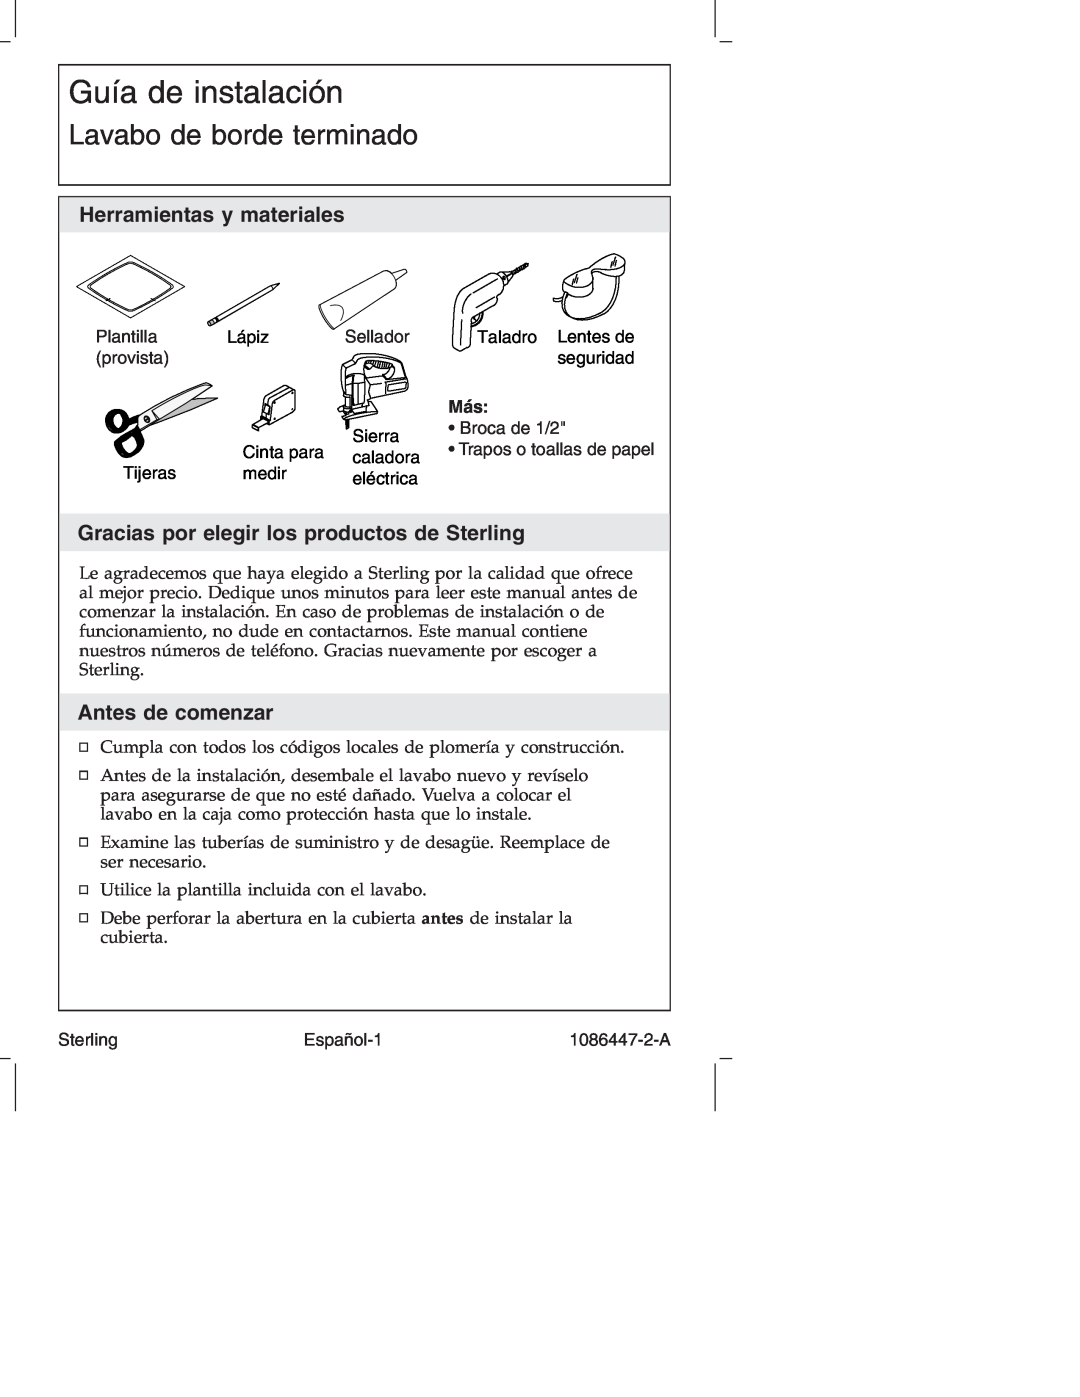 Sterling 1086447-2-A manual Guía de instalación, Lavabo de borde terminado, Herramientas y materiales, Antes de comenzar 